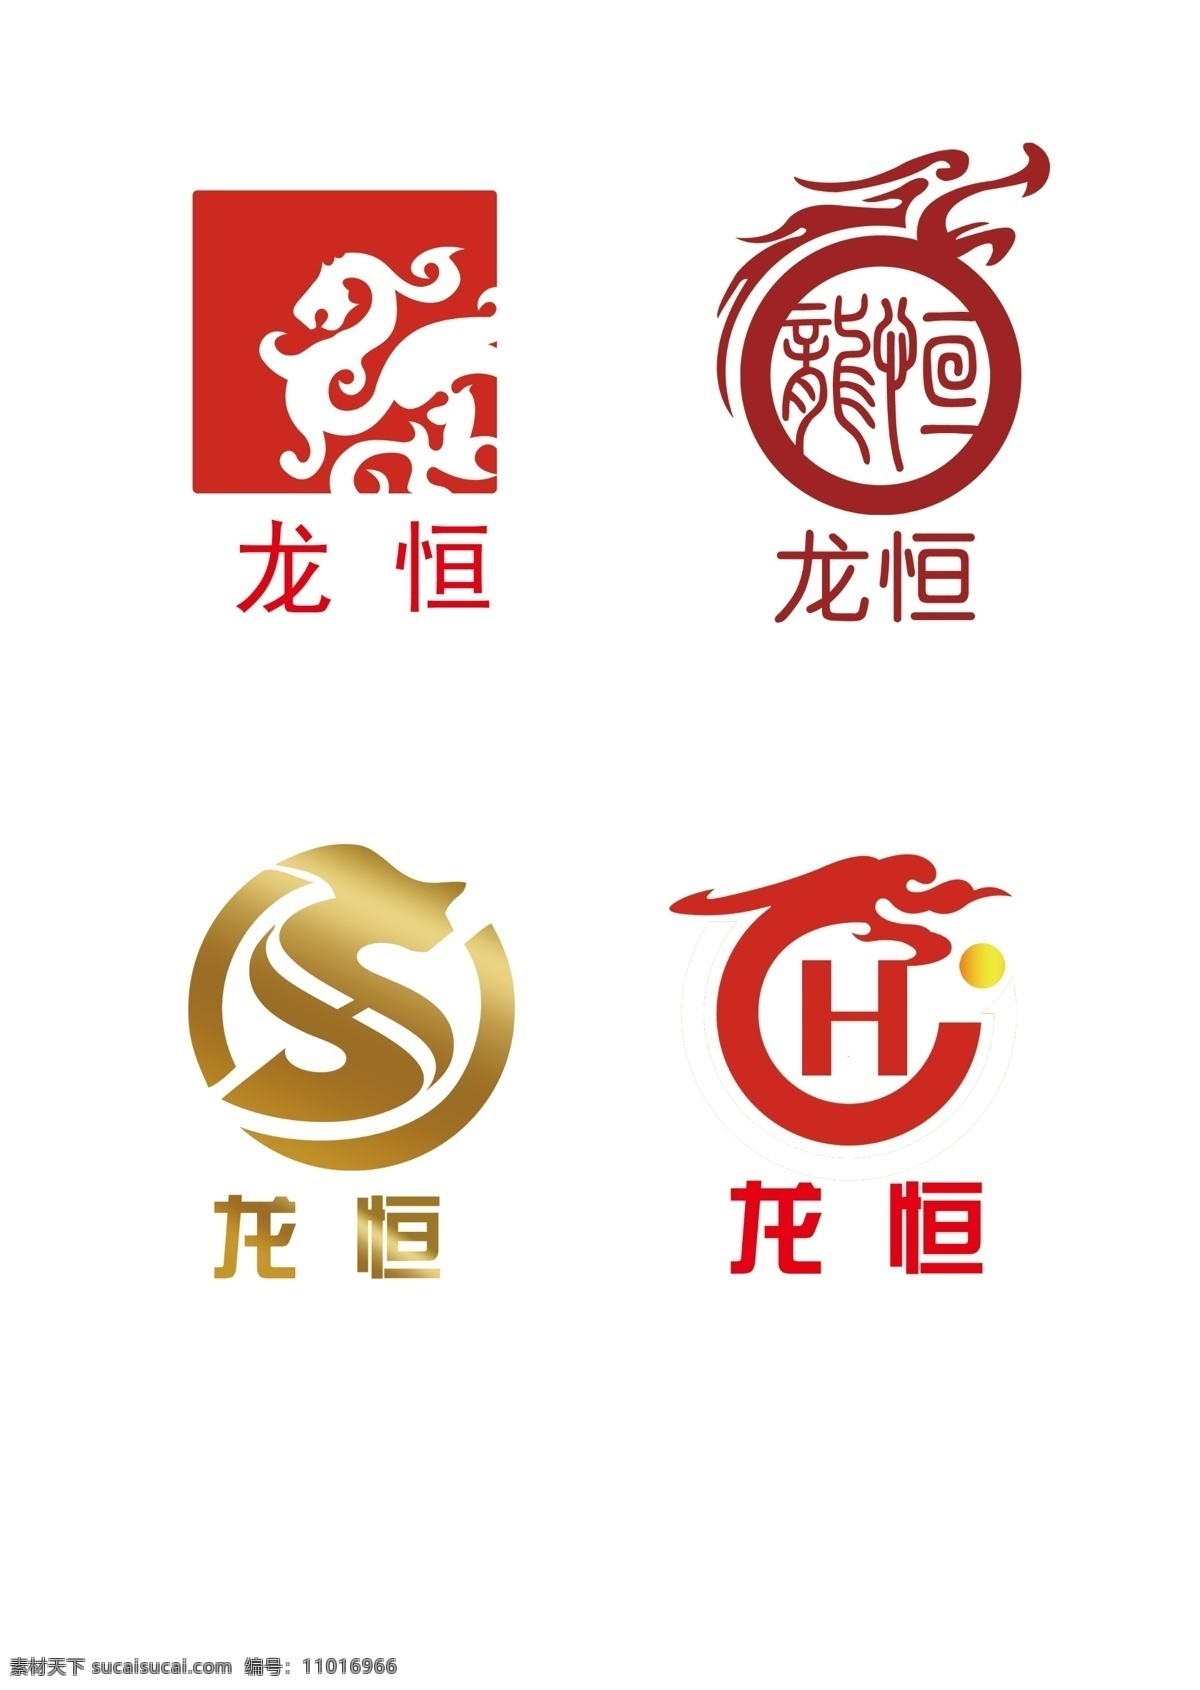 龙恒logo 企业标志 logo 标志 龙 h字母标志 龙恒 l logo设计